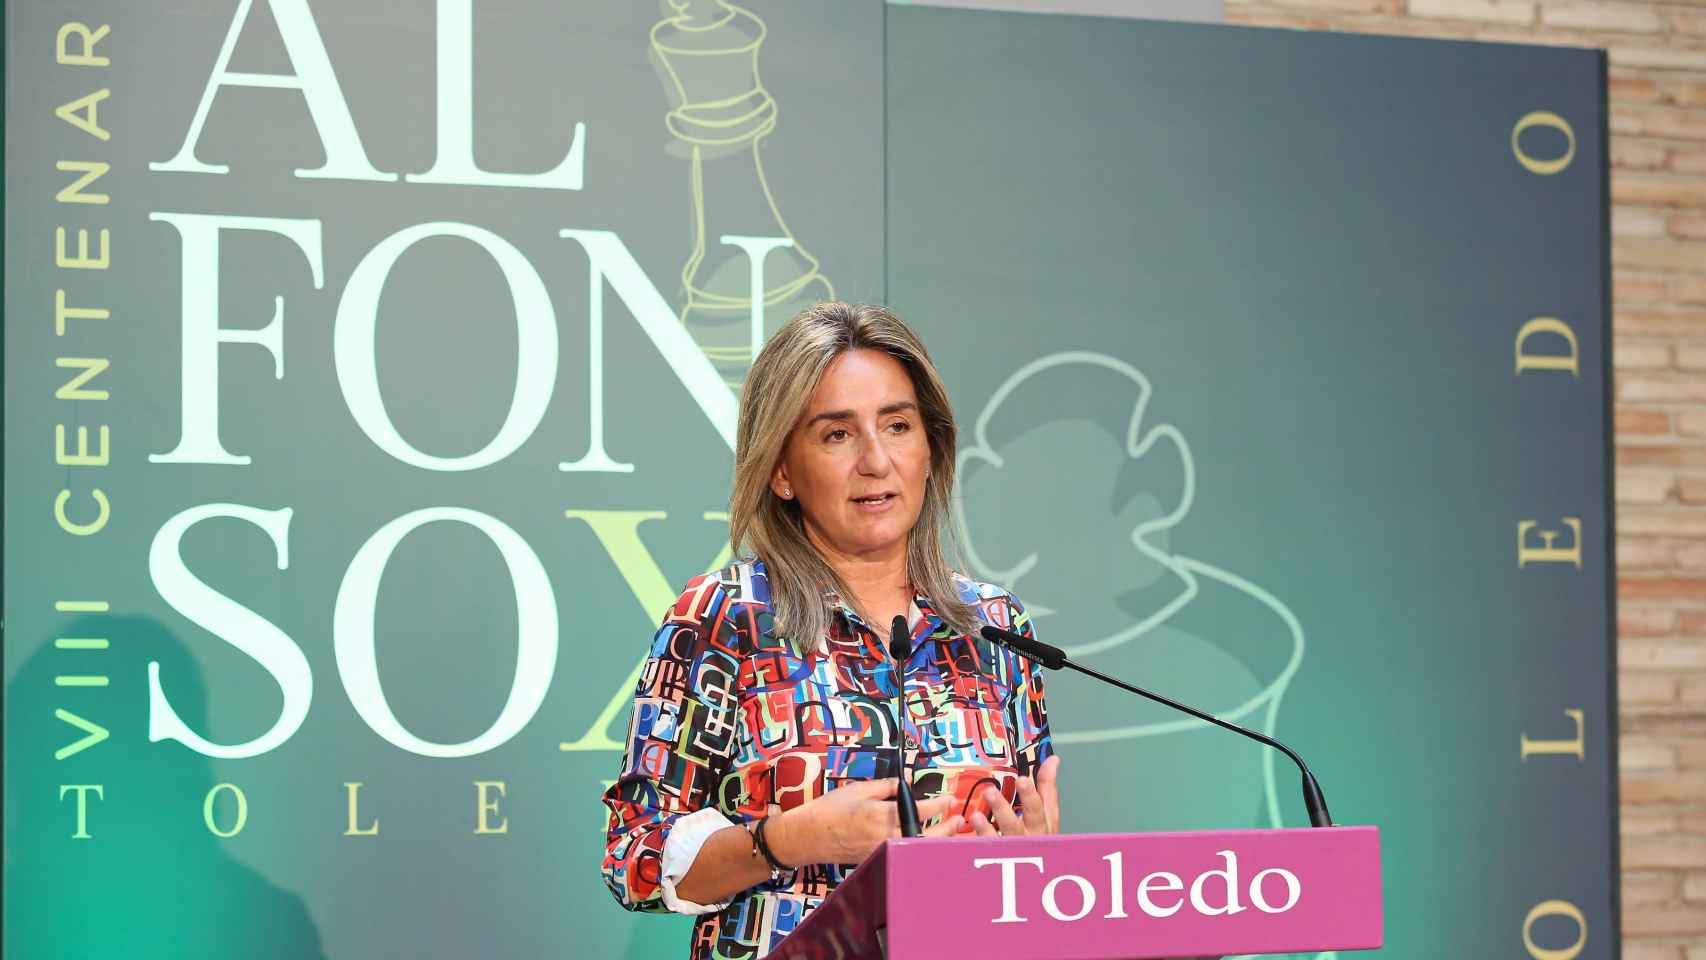 La alcaldesa de Toledo, Milagros Tolón, ha presentado el Septiembre Cultural de Toledo. Fotos: Ó. Huertas.